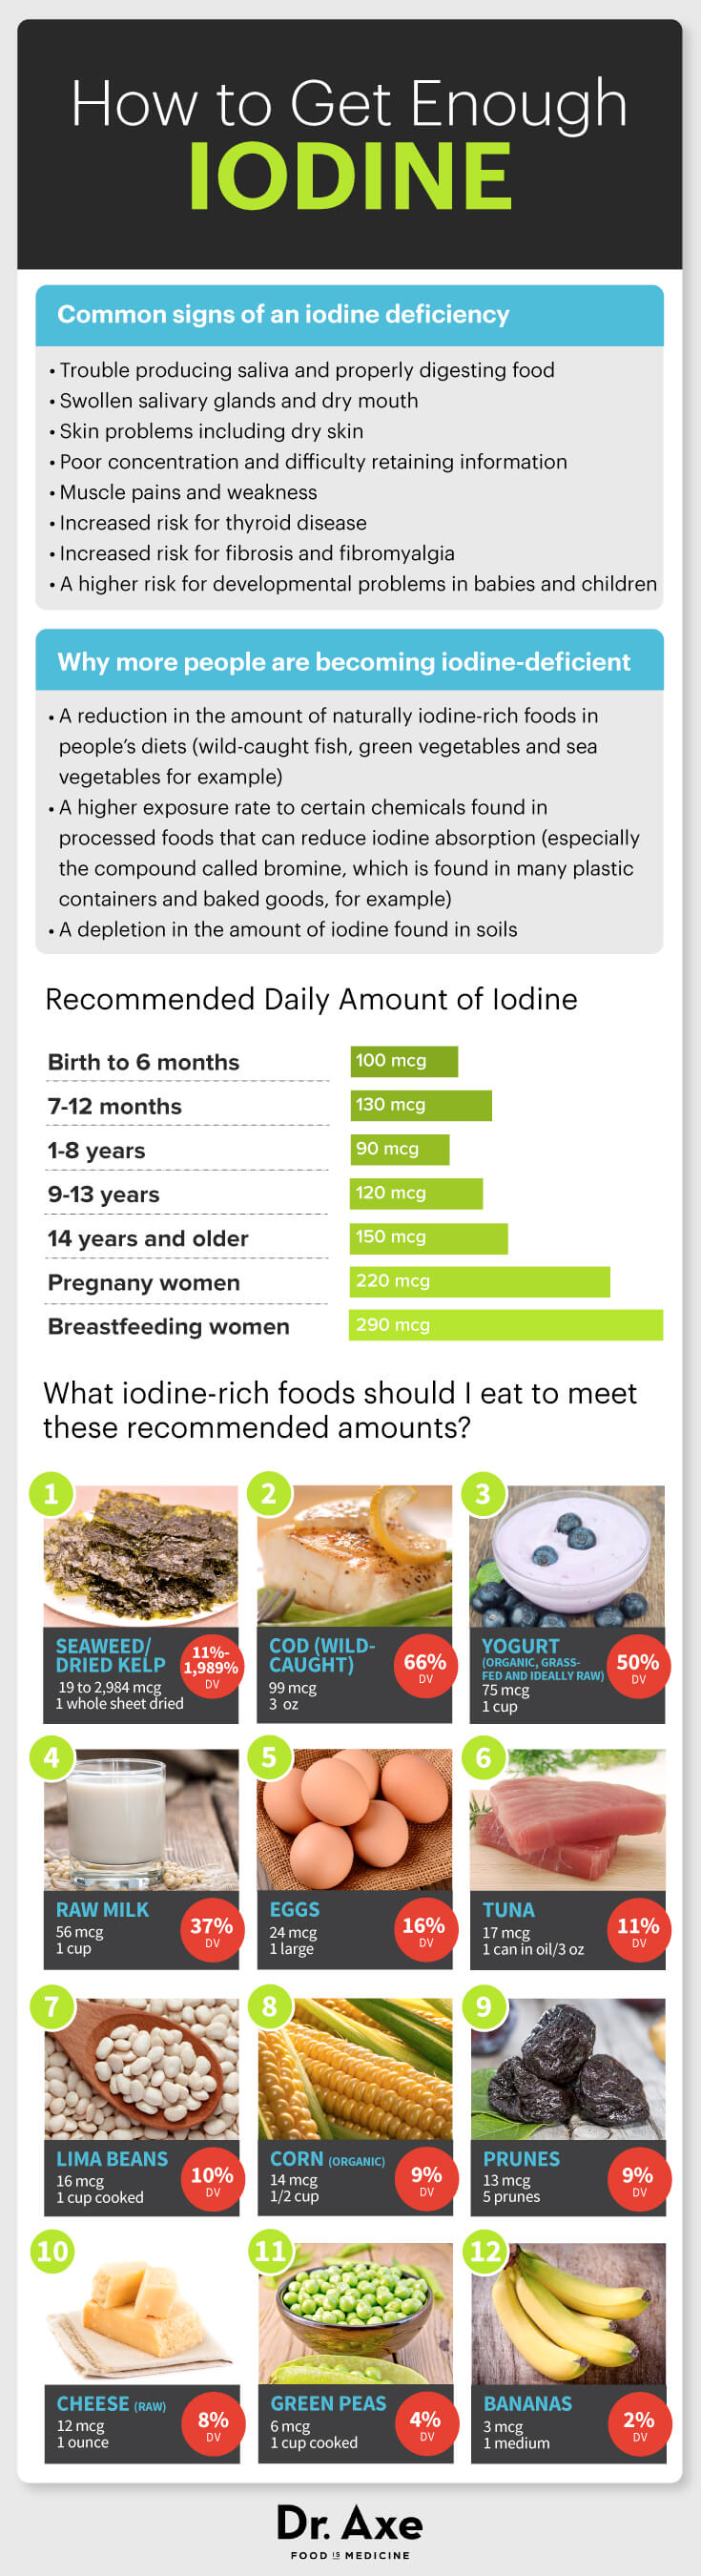 Iodine Infographic 